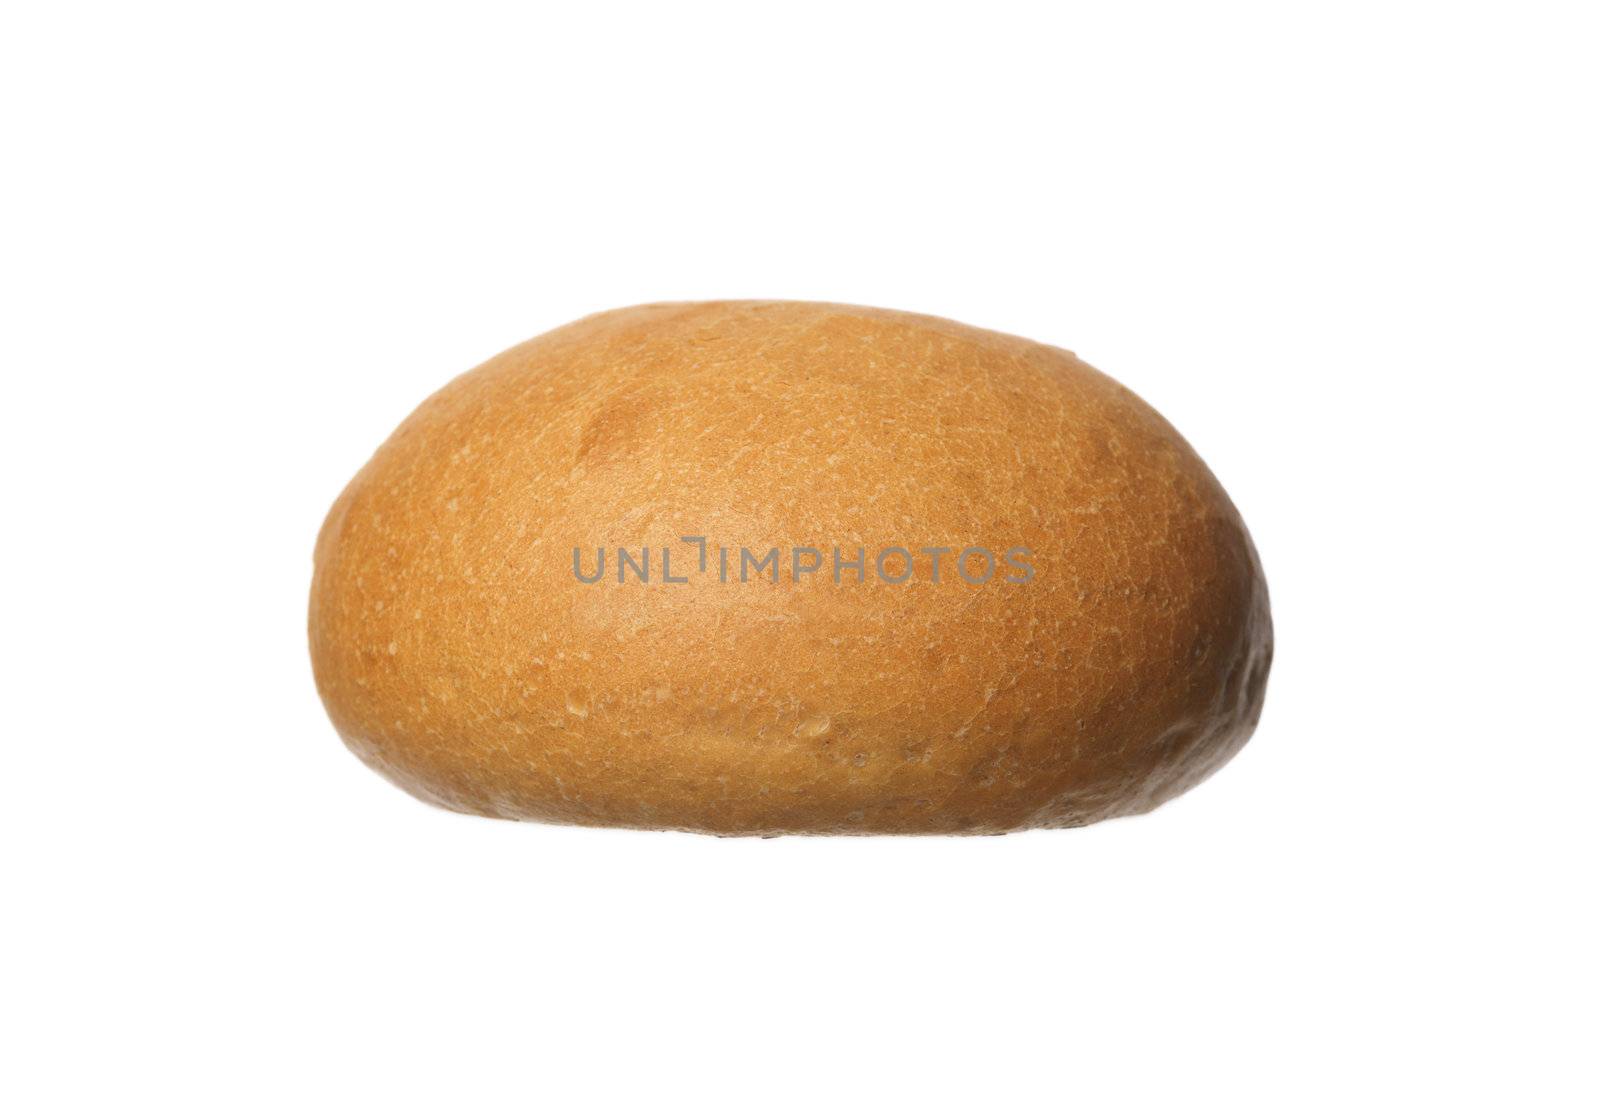 French Bread by gemenacom